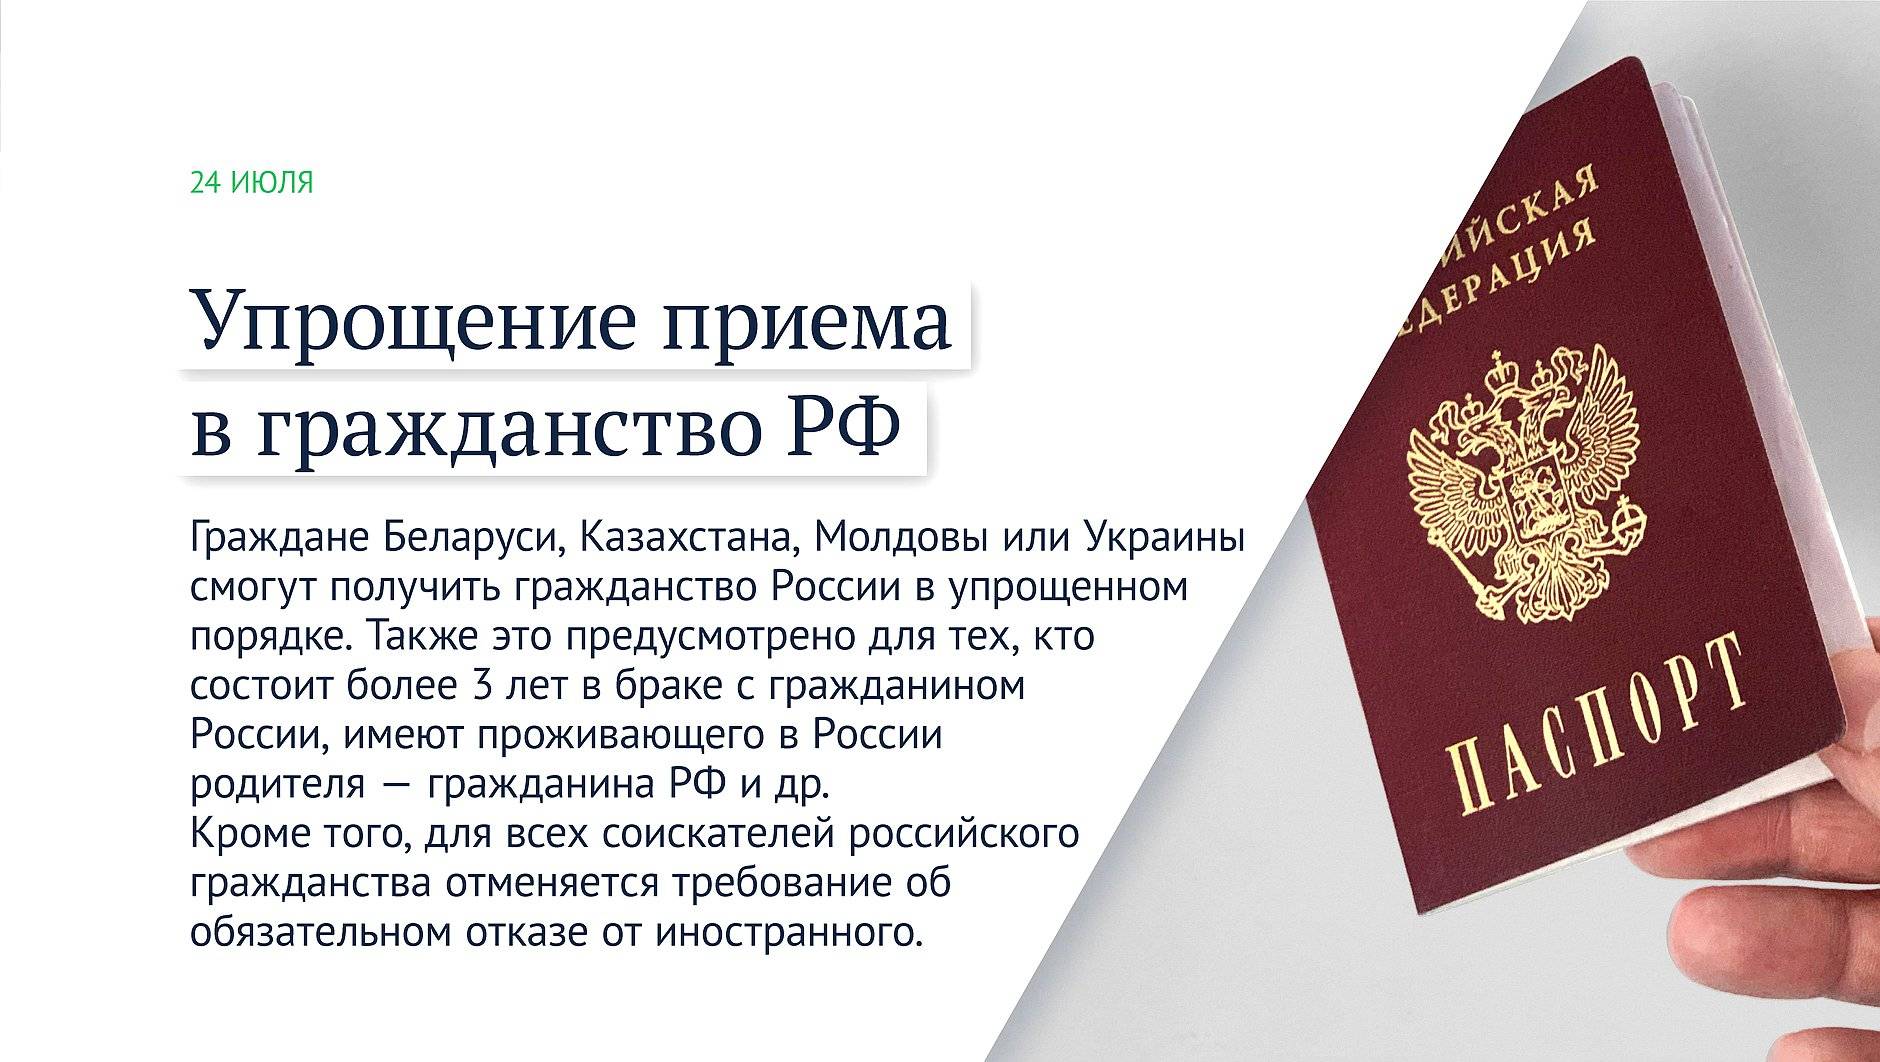 Как быстро получить гражданство россии гражданину таджикистана в 2021 году